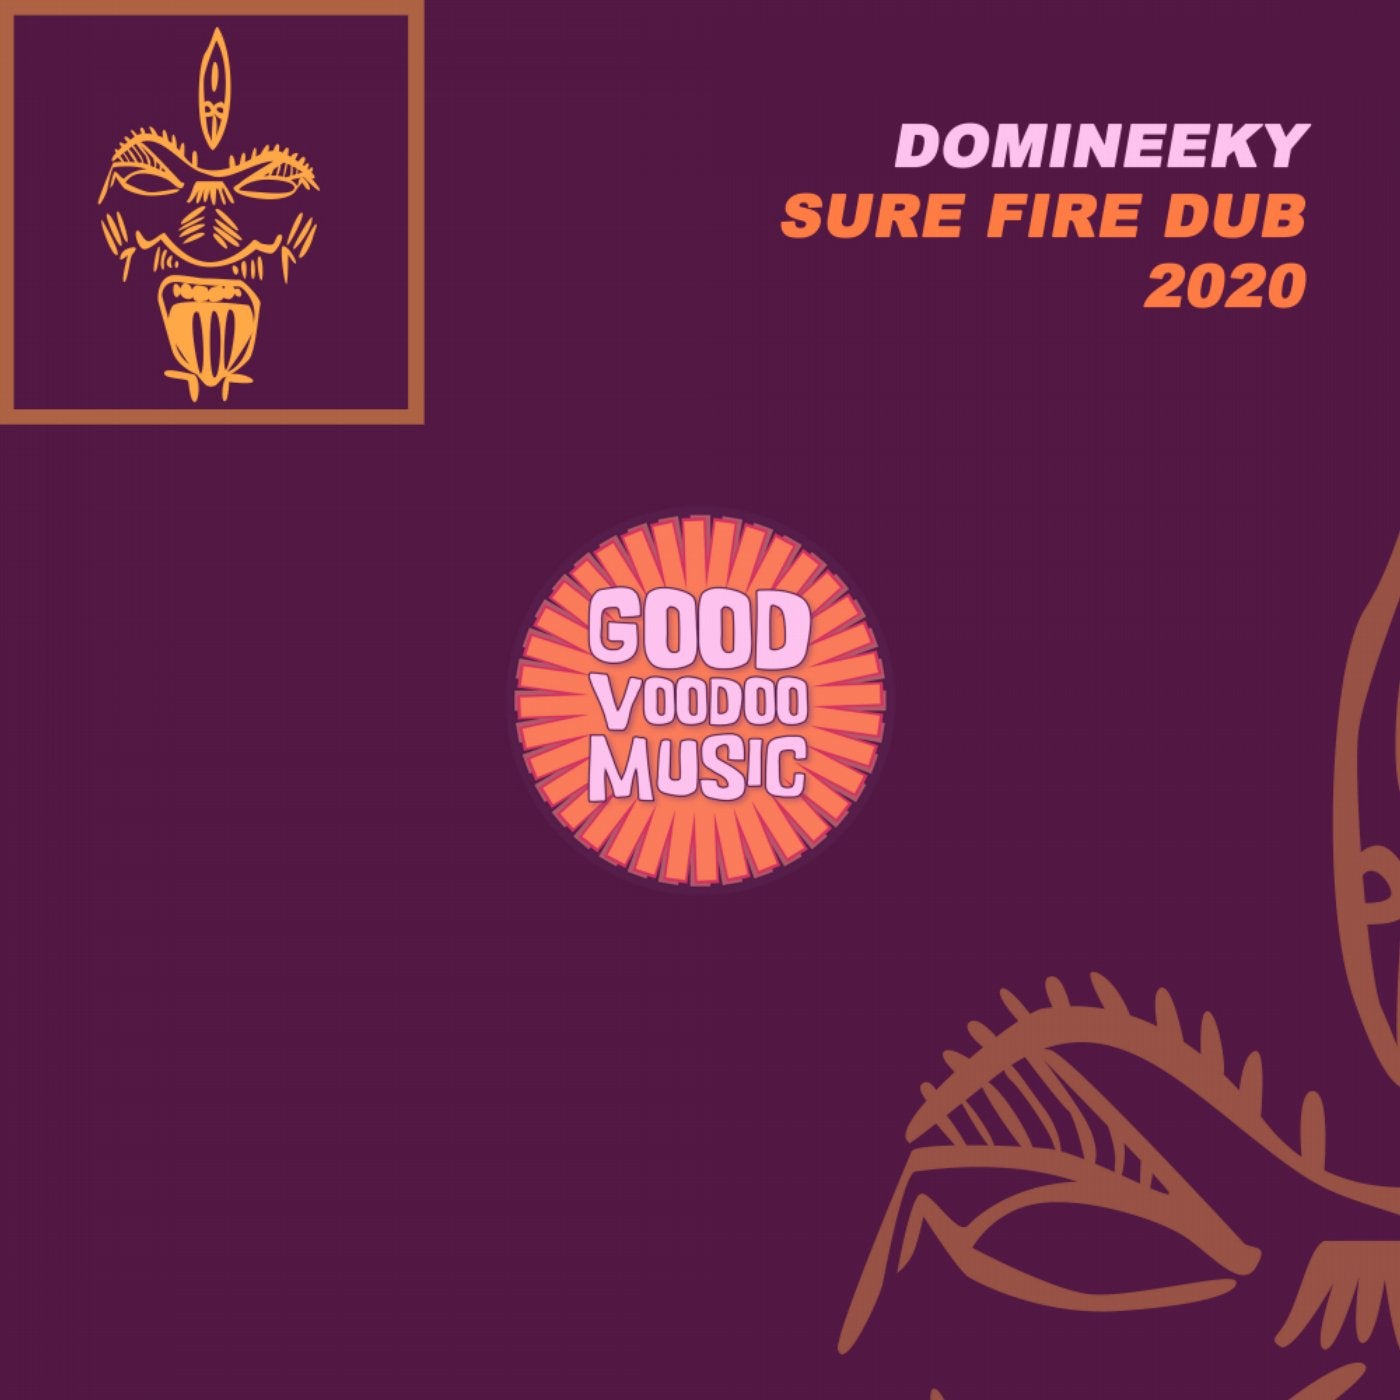 Sure Fire Dub 2020